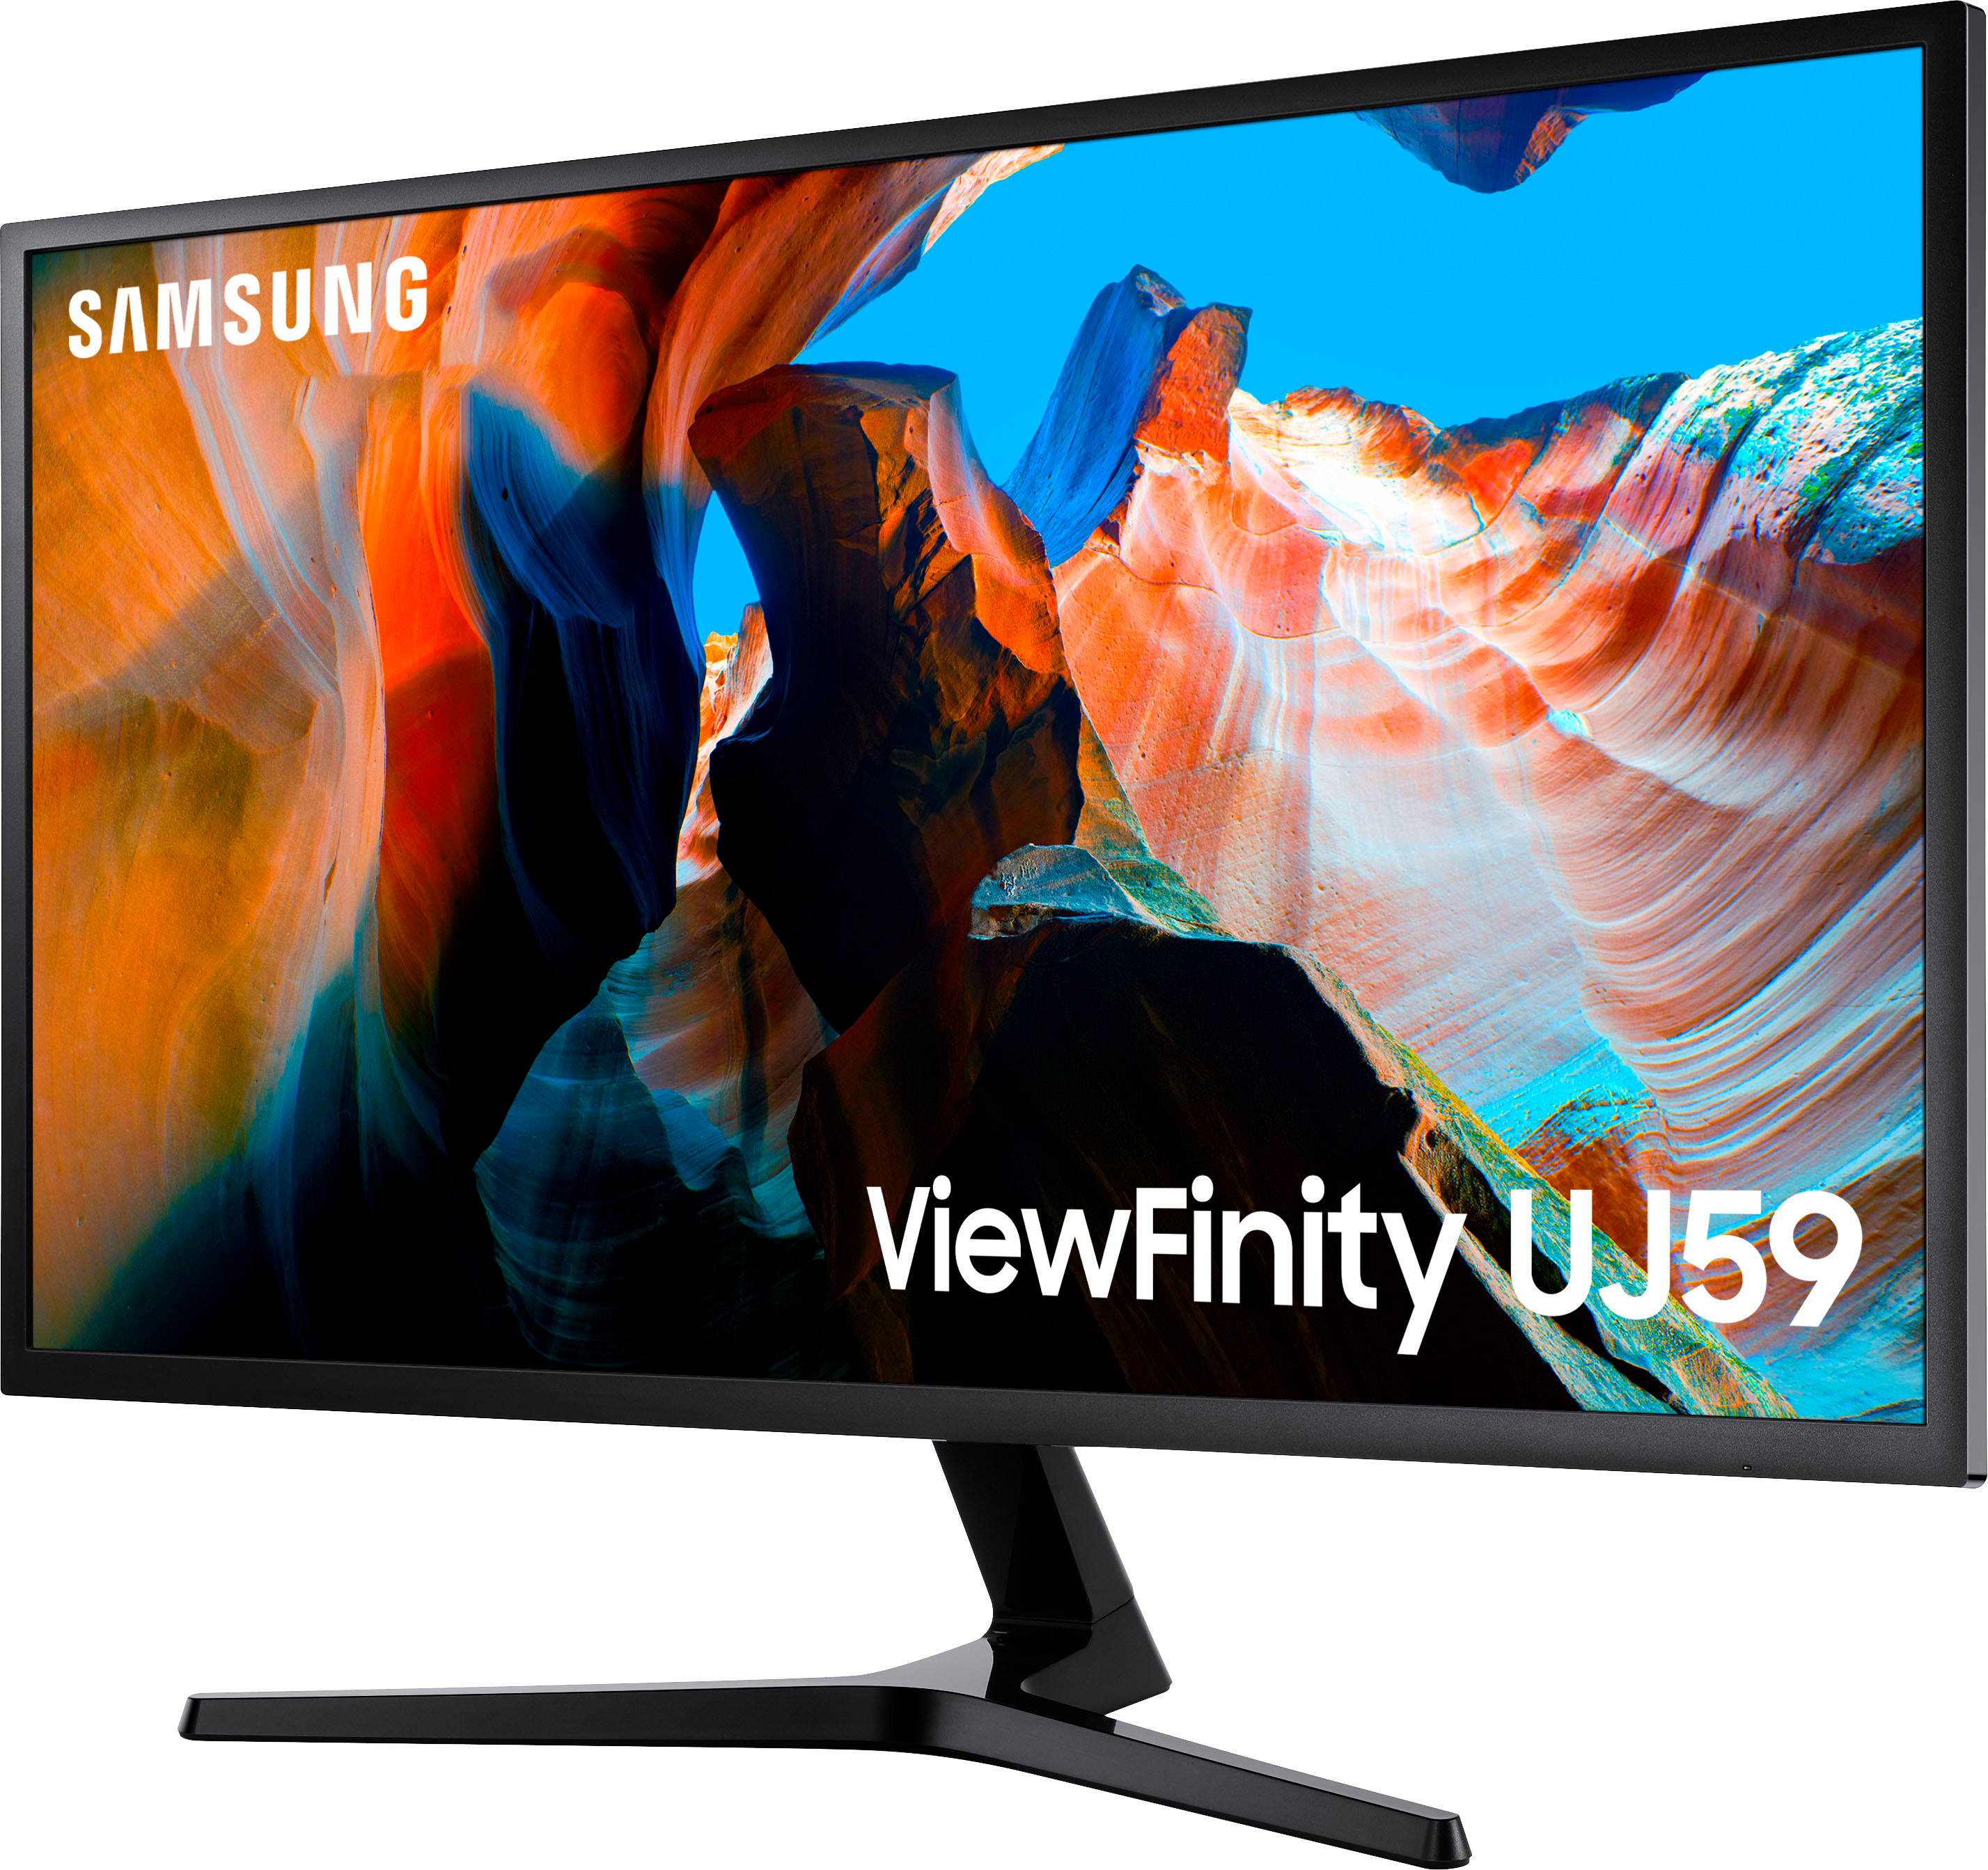 Angle View: Samsung - UJ59 Series U32J590UQN 32" LED 4K UHD FreeSync Monitor (DisplayPort, HDMI) - Dark Gray/Blue